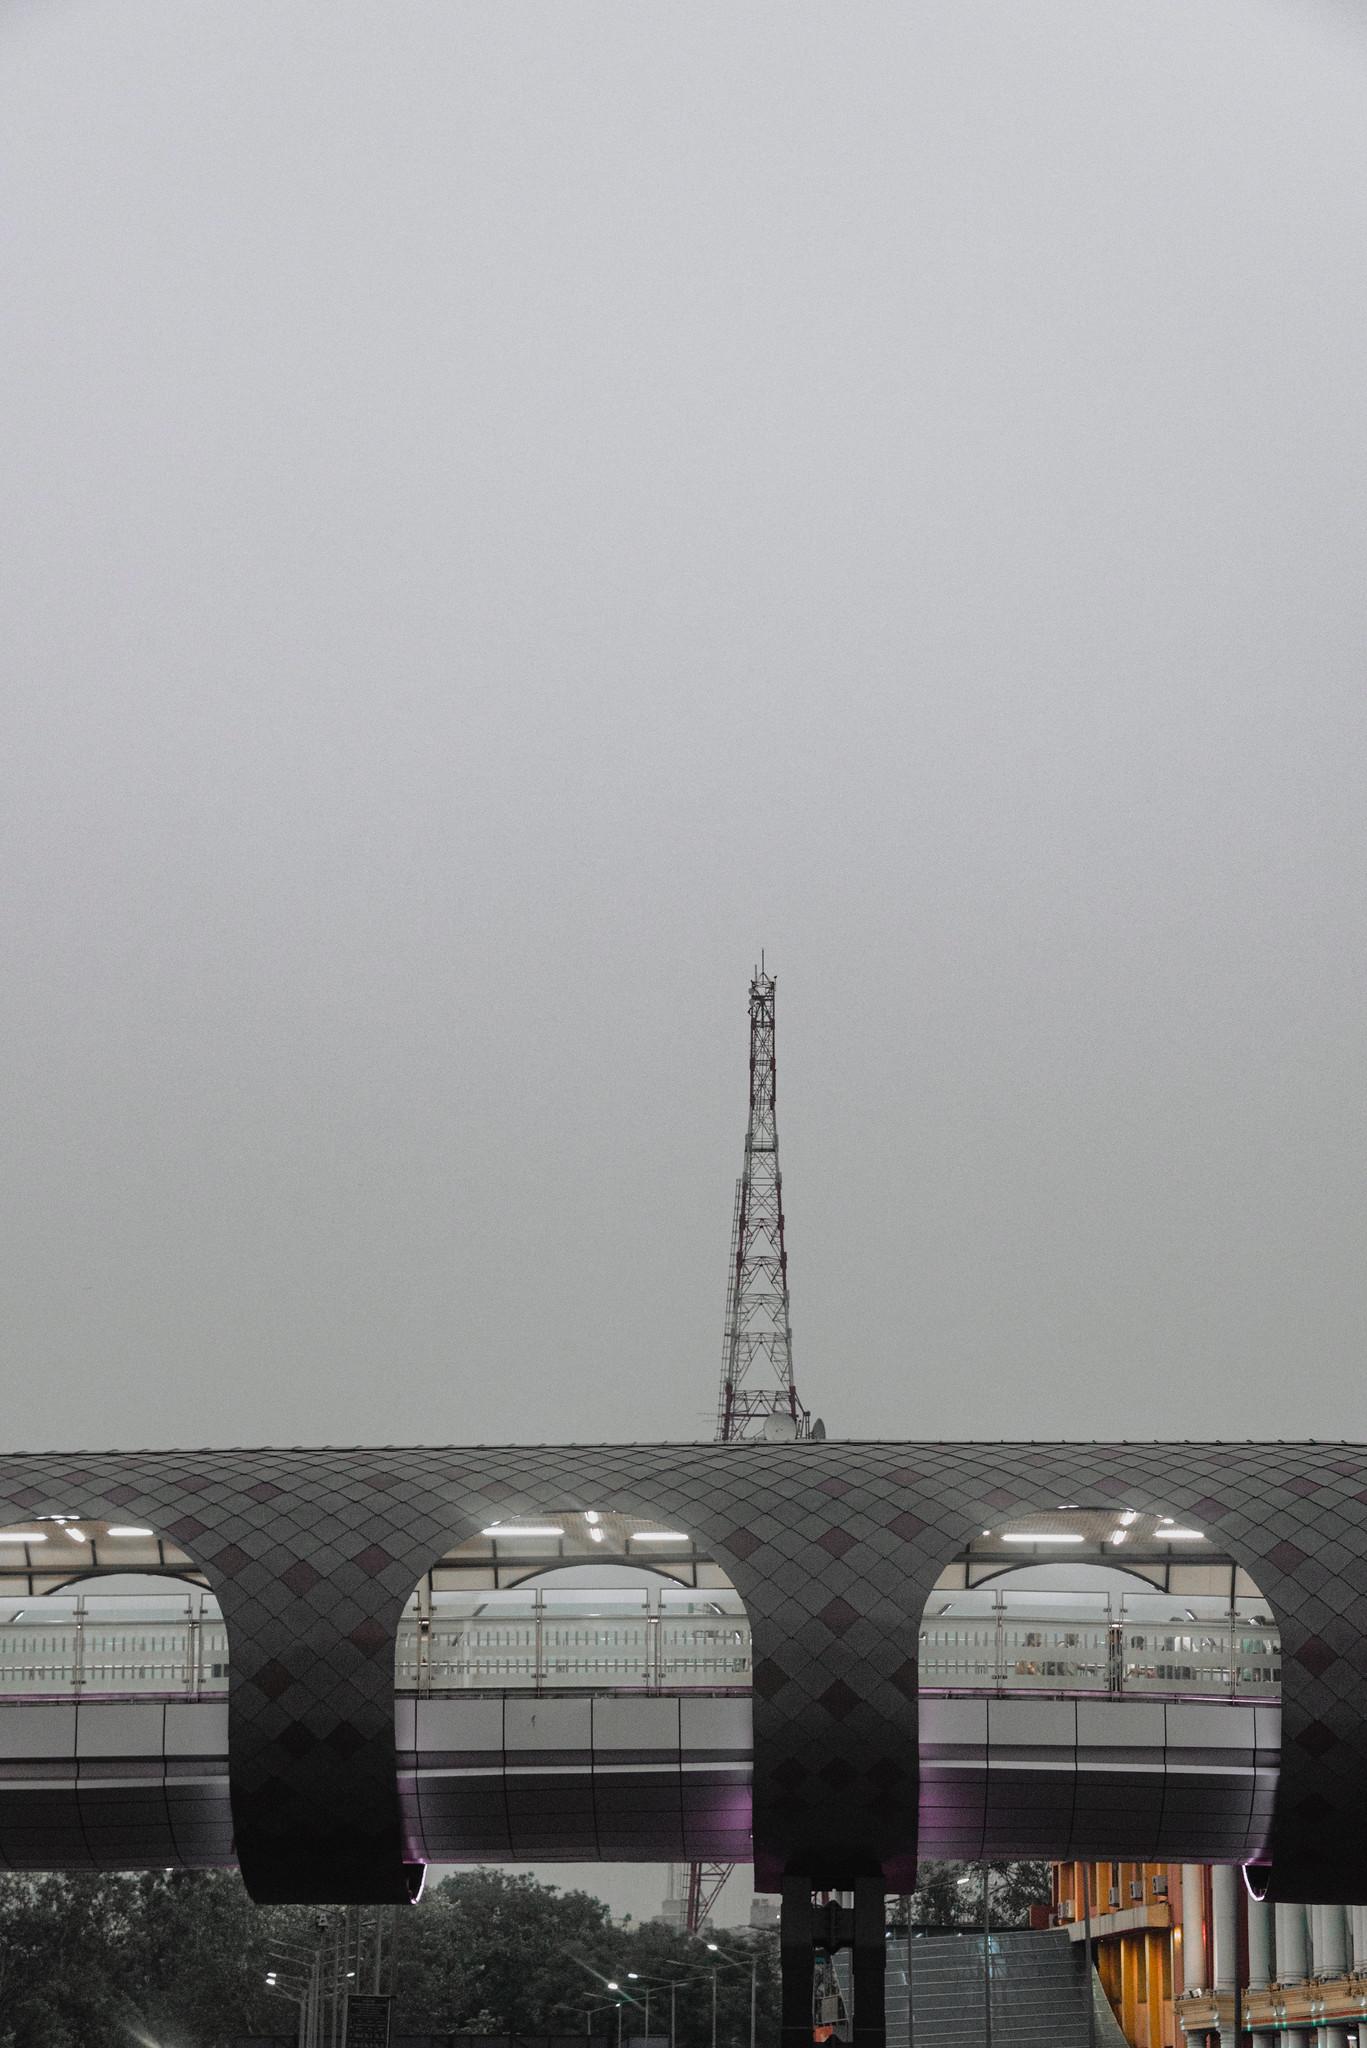 A Pedestrian Bridge, Engulfed in Smog